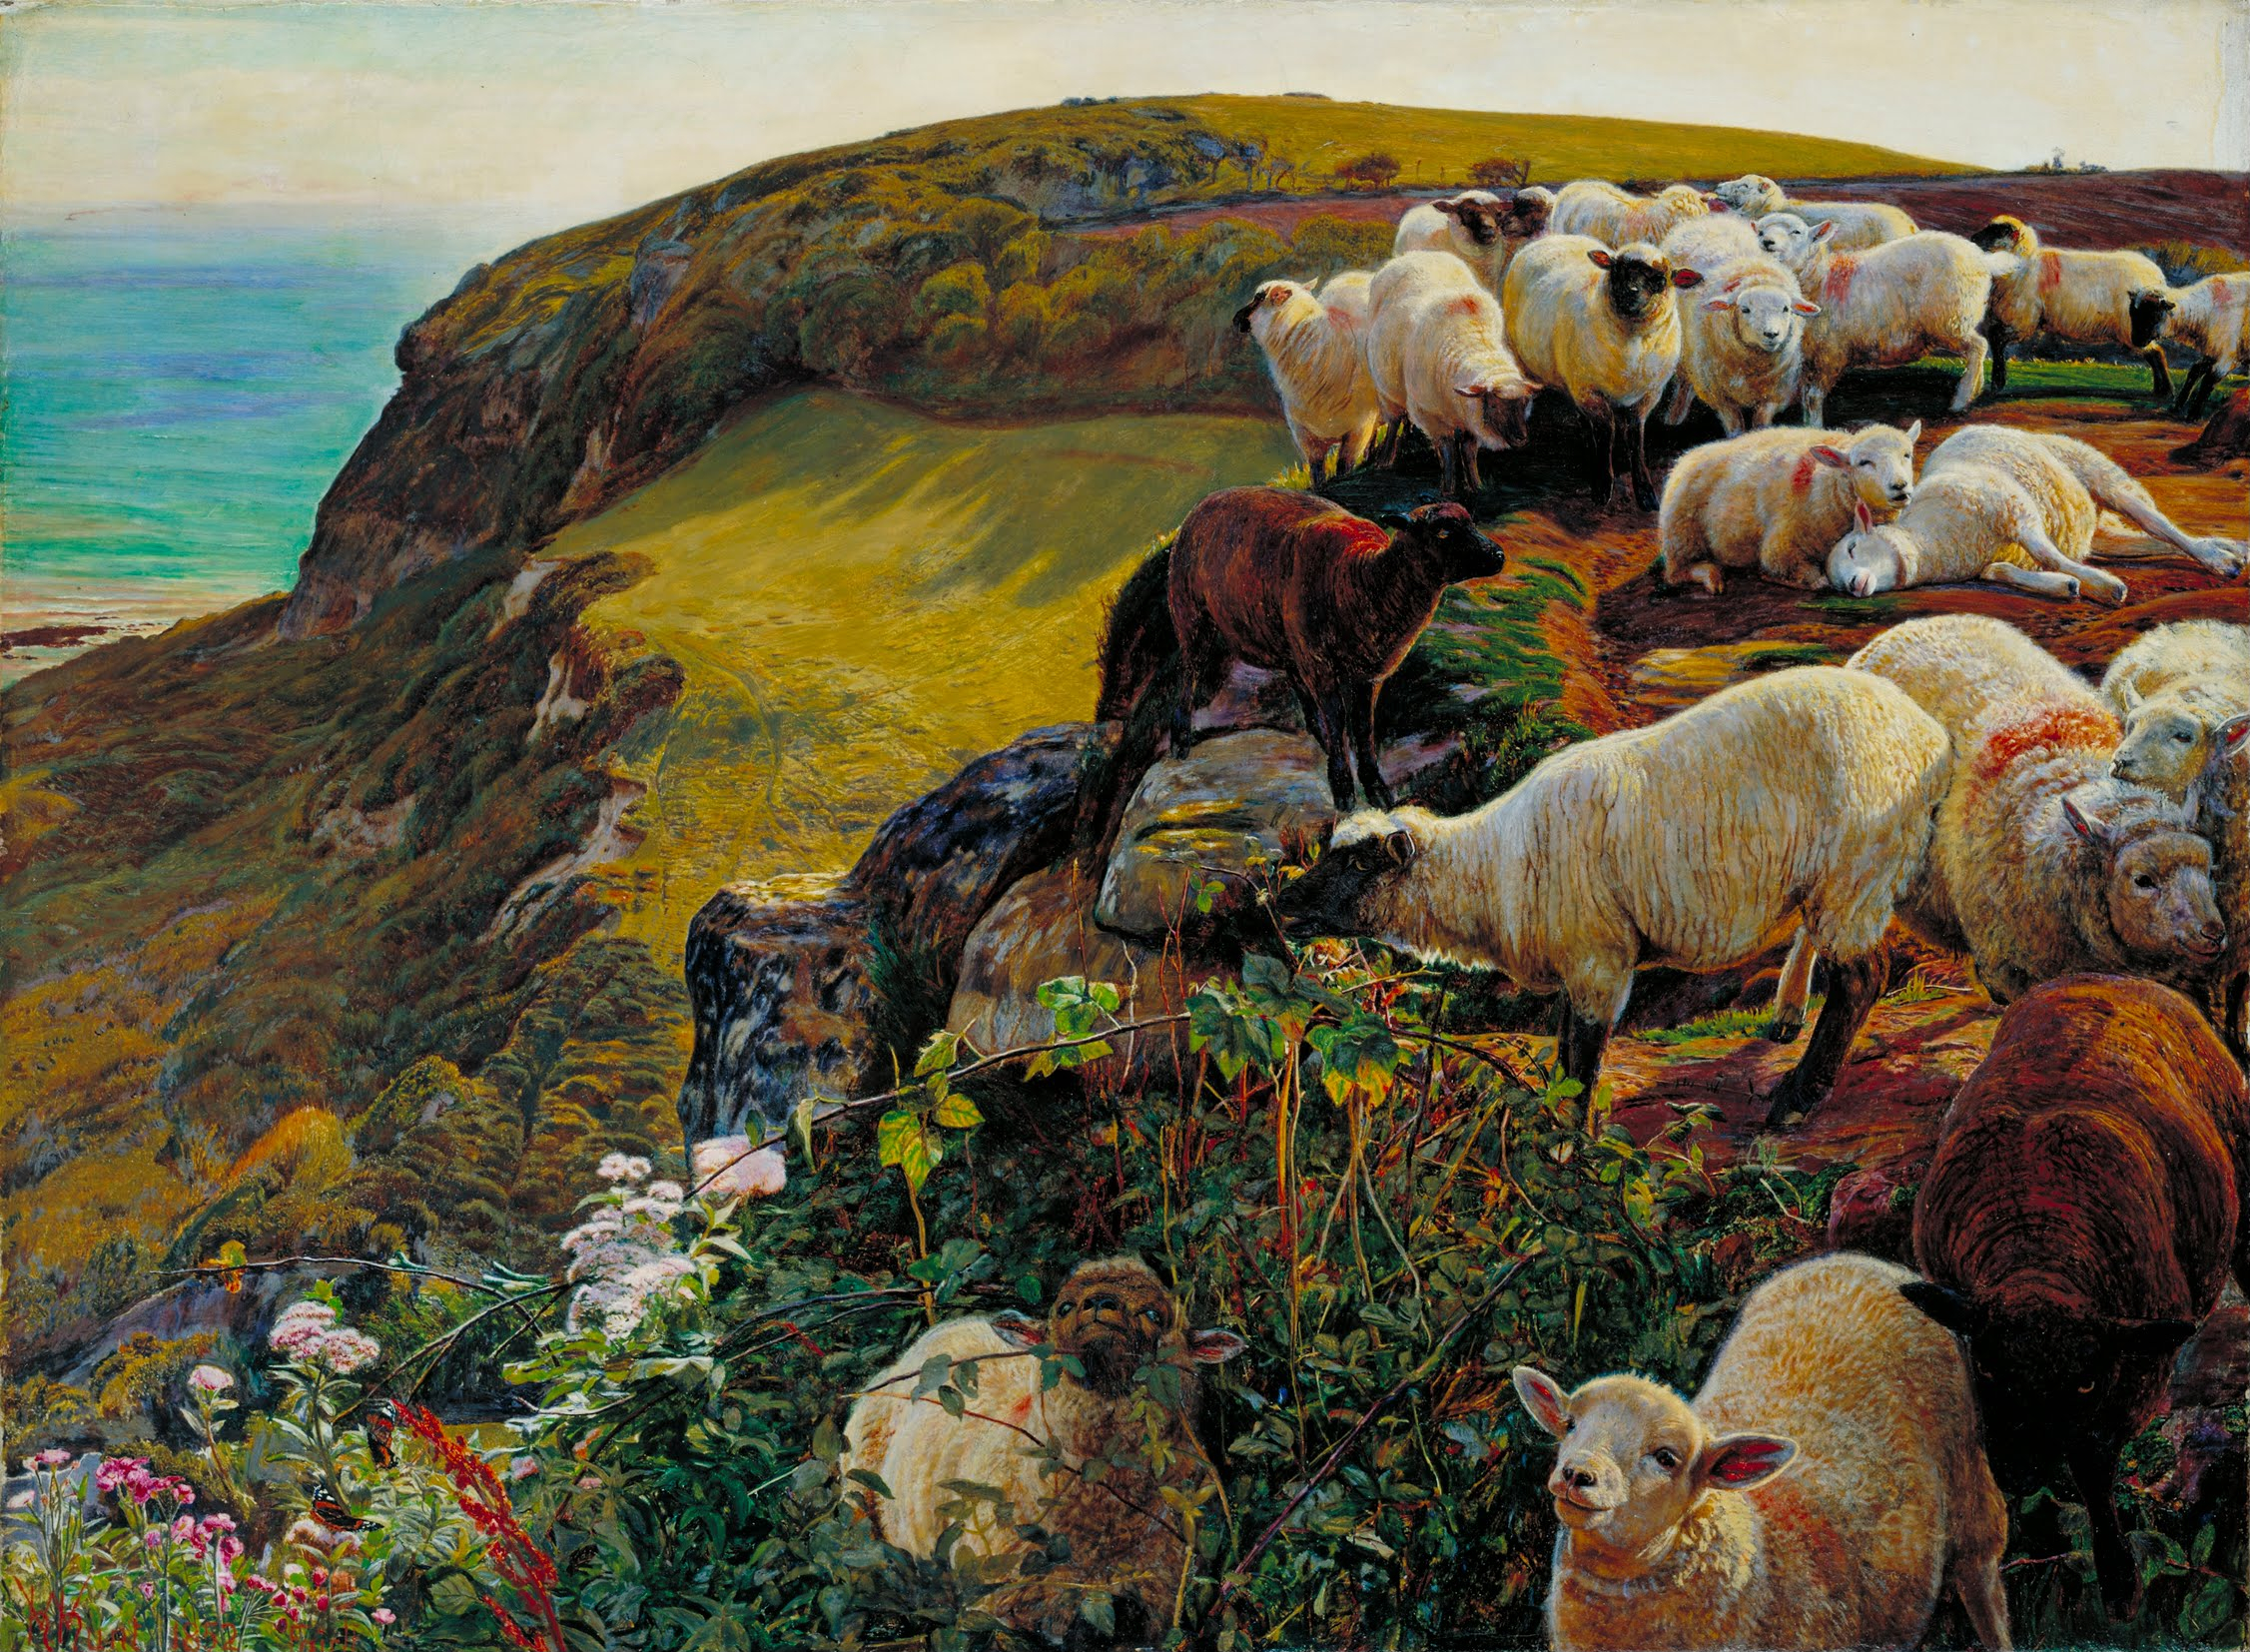 Naše anglická pobřeží, 1852 ('Zbloudilé ovce') by William Holman Hunt - 1852 - 58,4 x 43,2 cm 